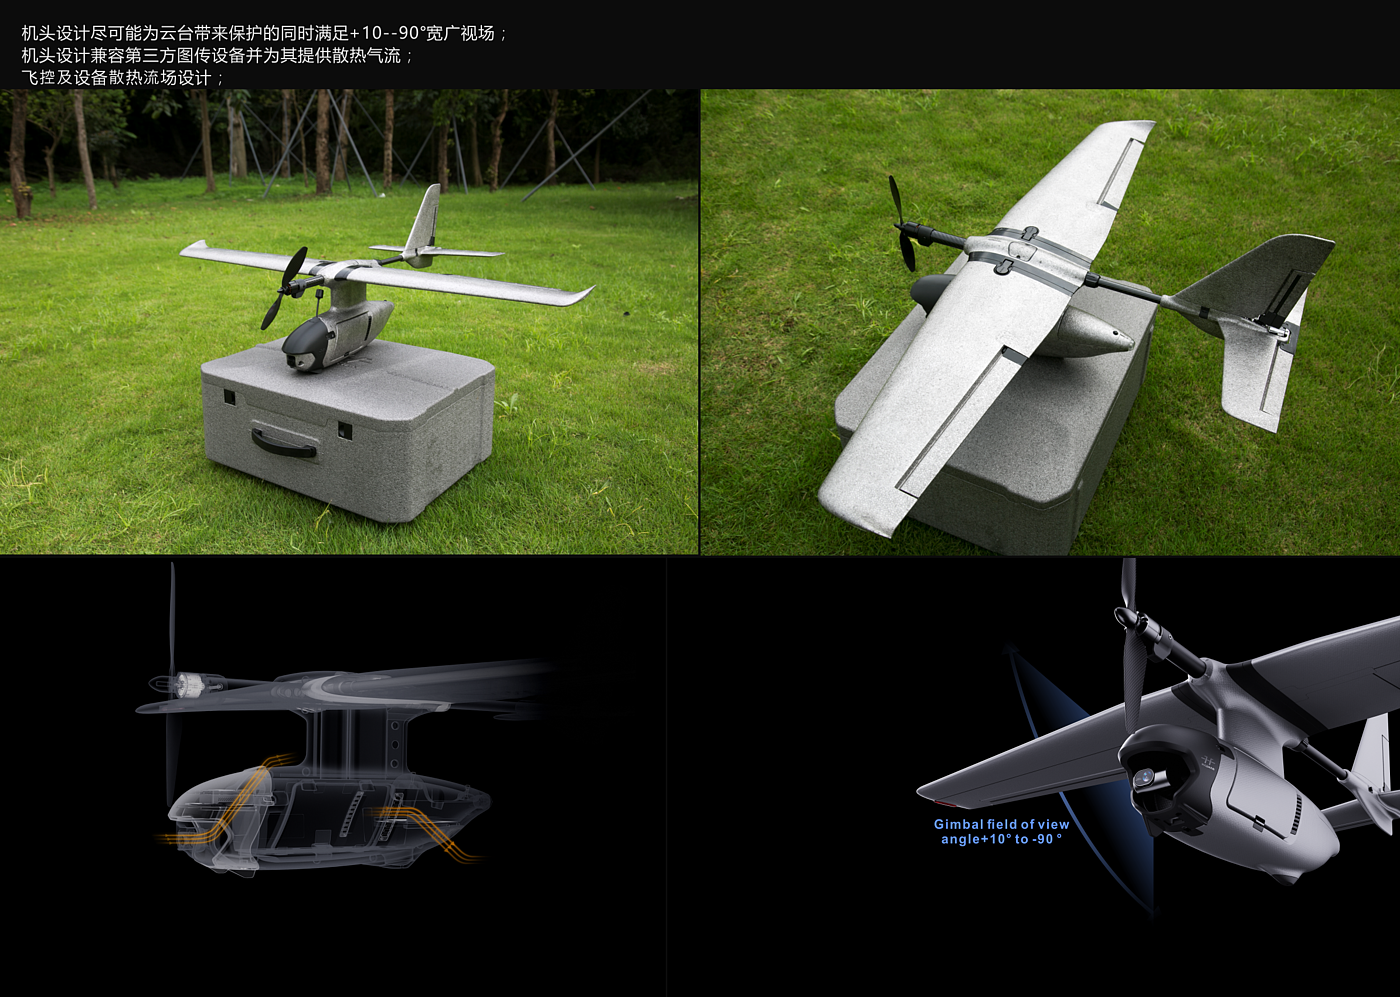 DJI，FPV，无人机，固定翼，航模，穿越机，摄影，科技感，